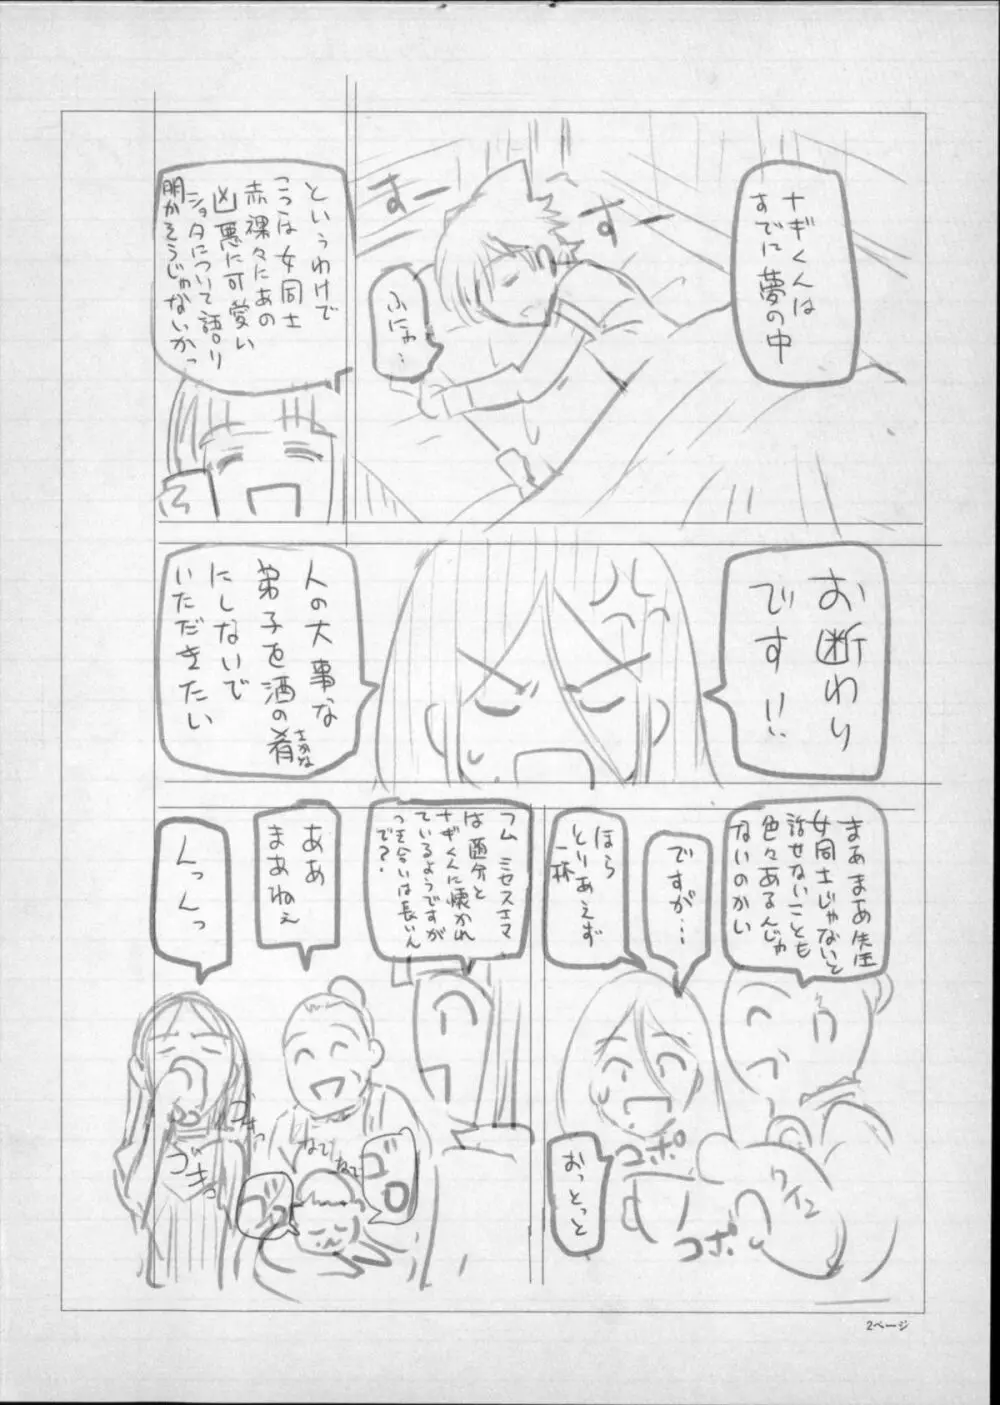 魔女×ショタ + 描き下ろし8P小冊子, 限定版 特典情報 ~ 限定版 264ページ